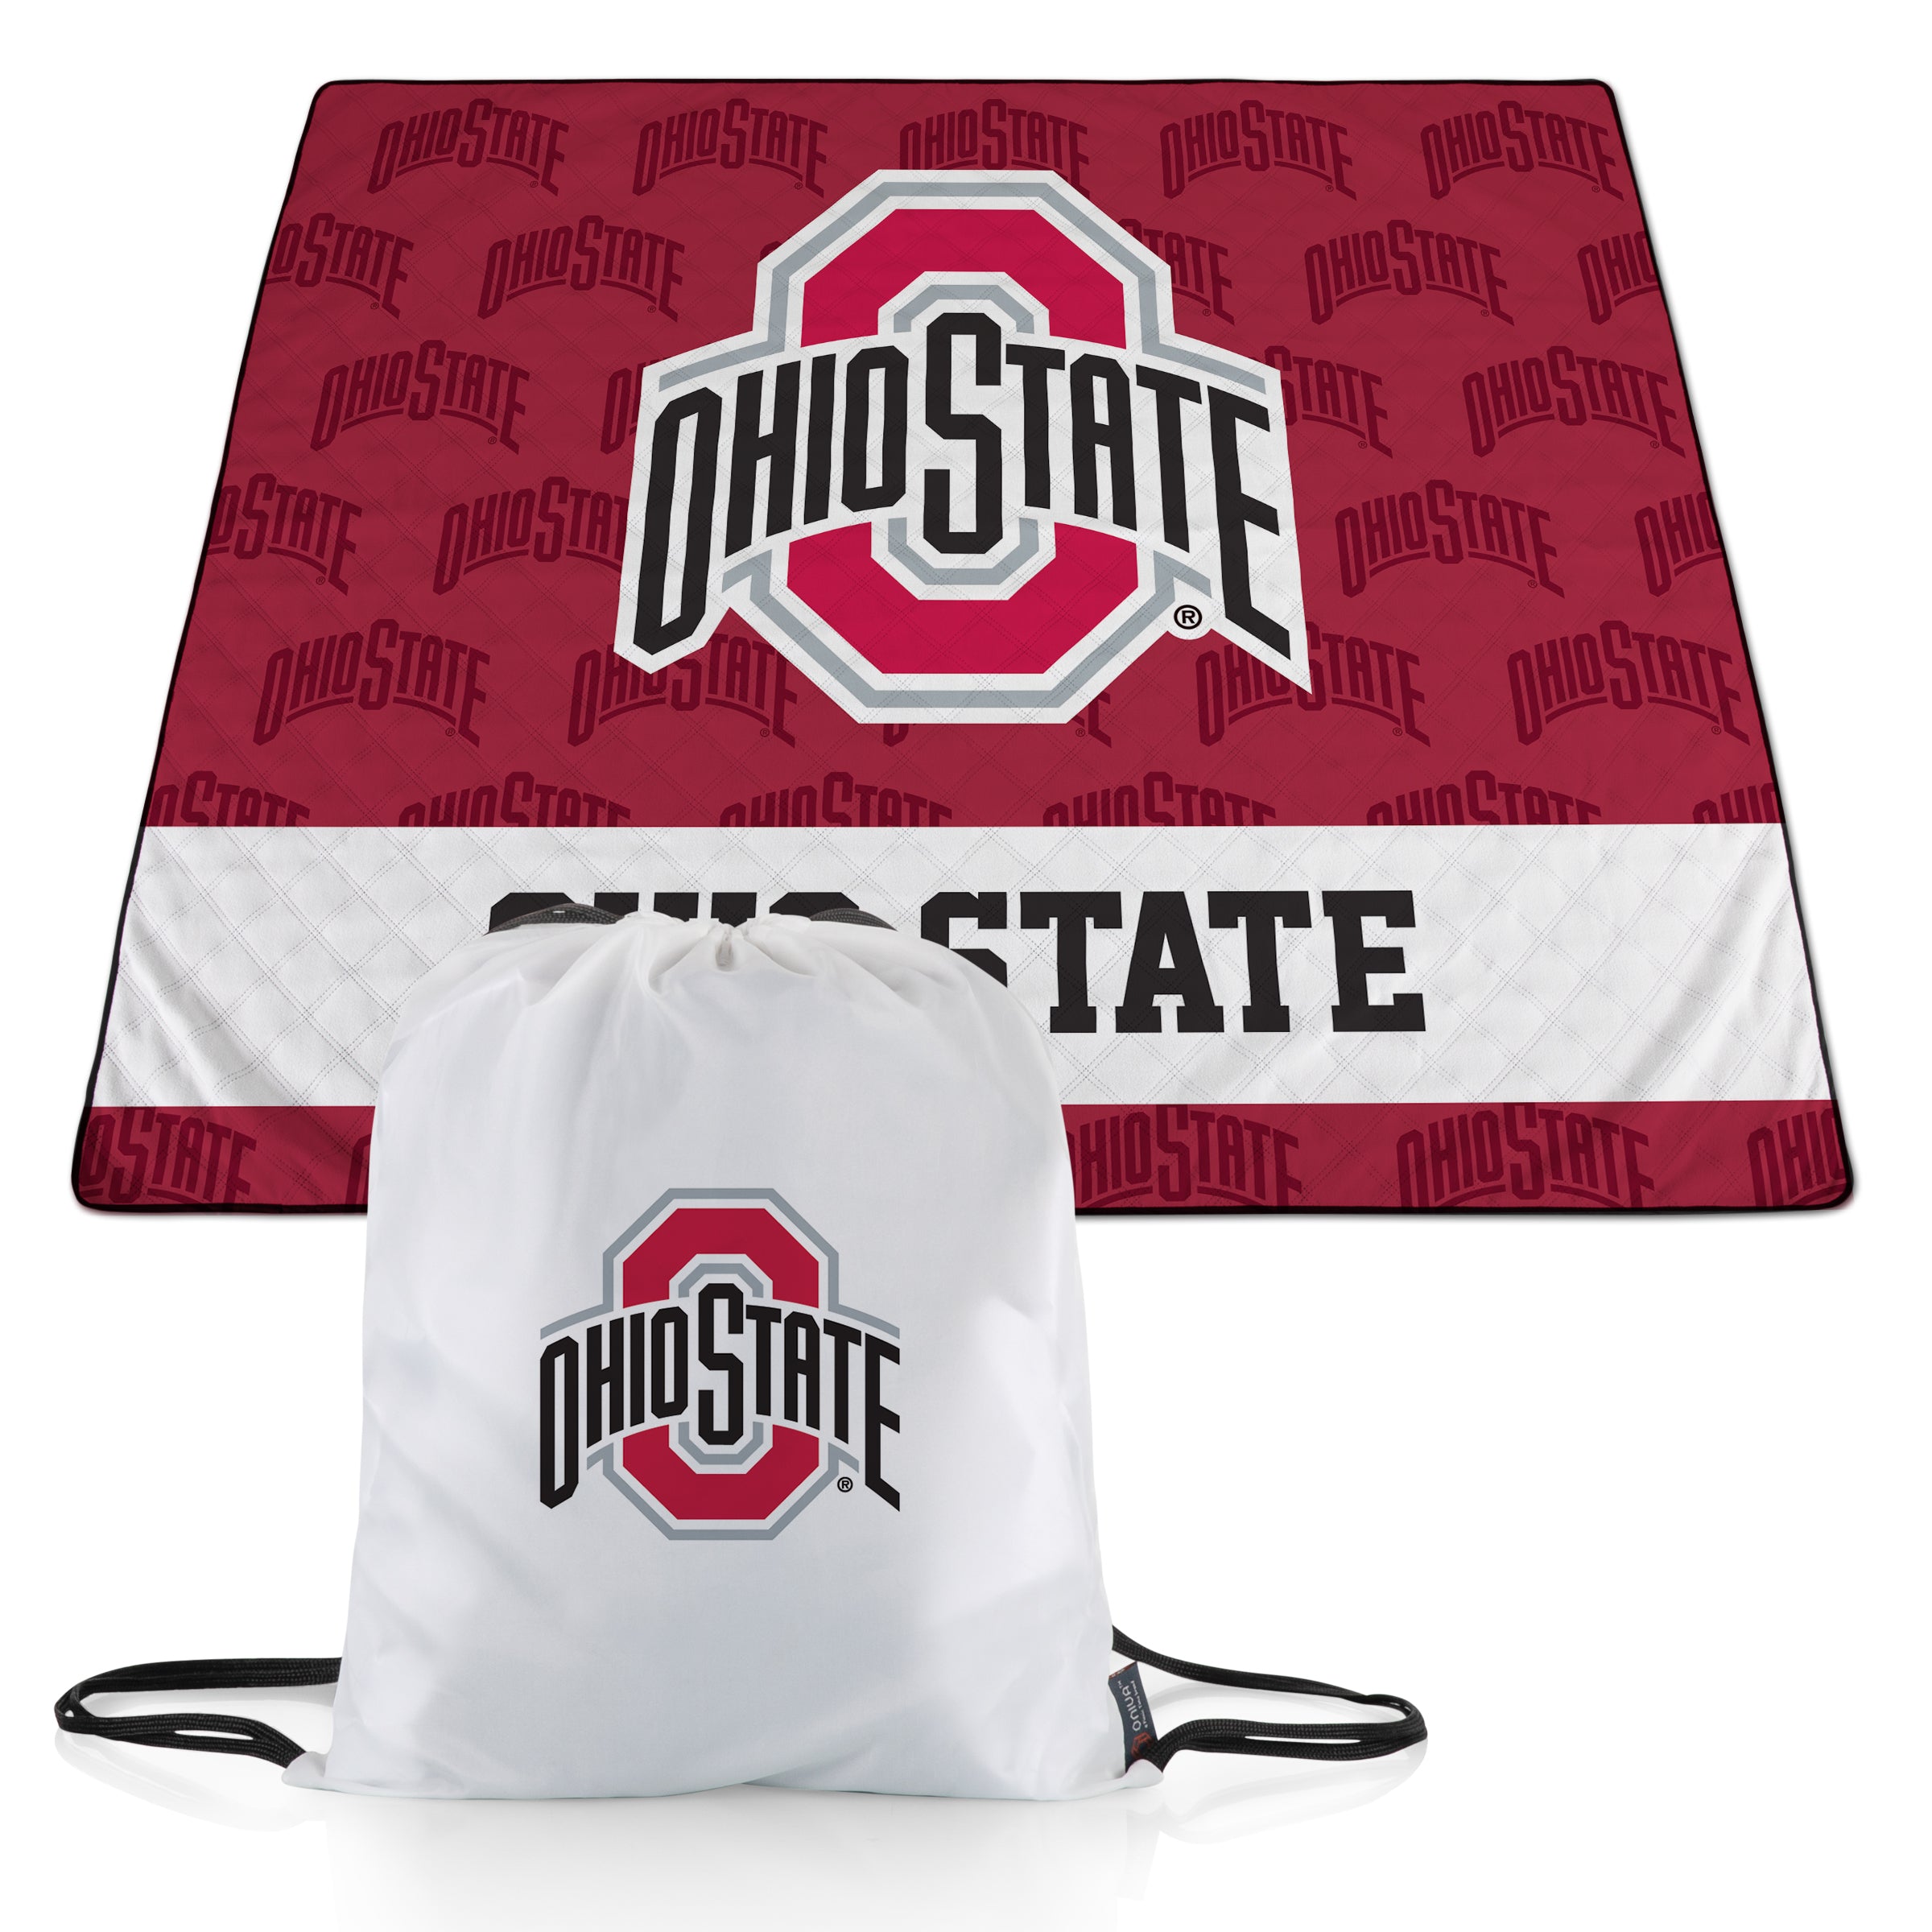 Ohio State Buckeyes - Impresa Picnic Blanket